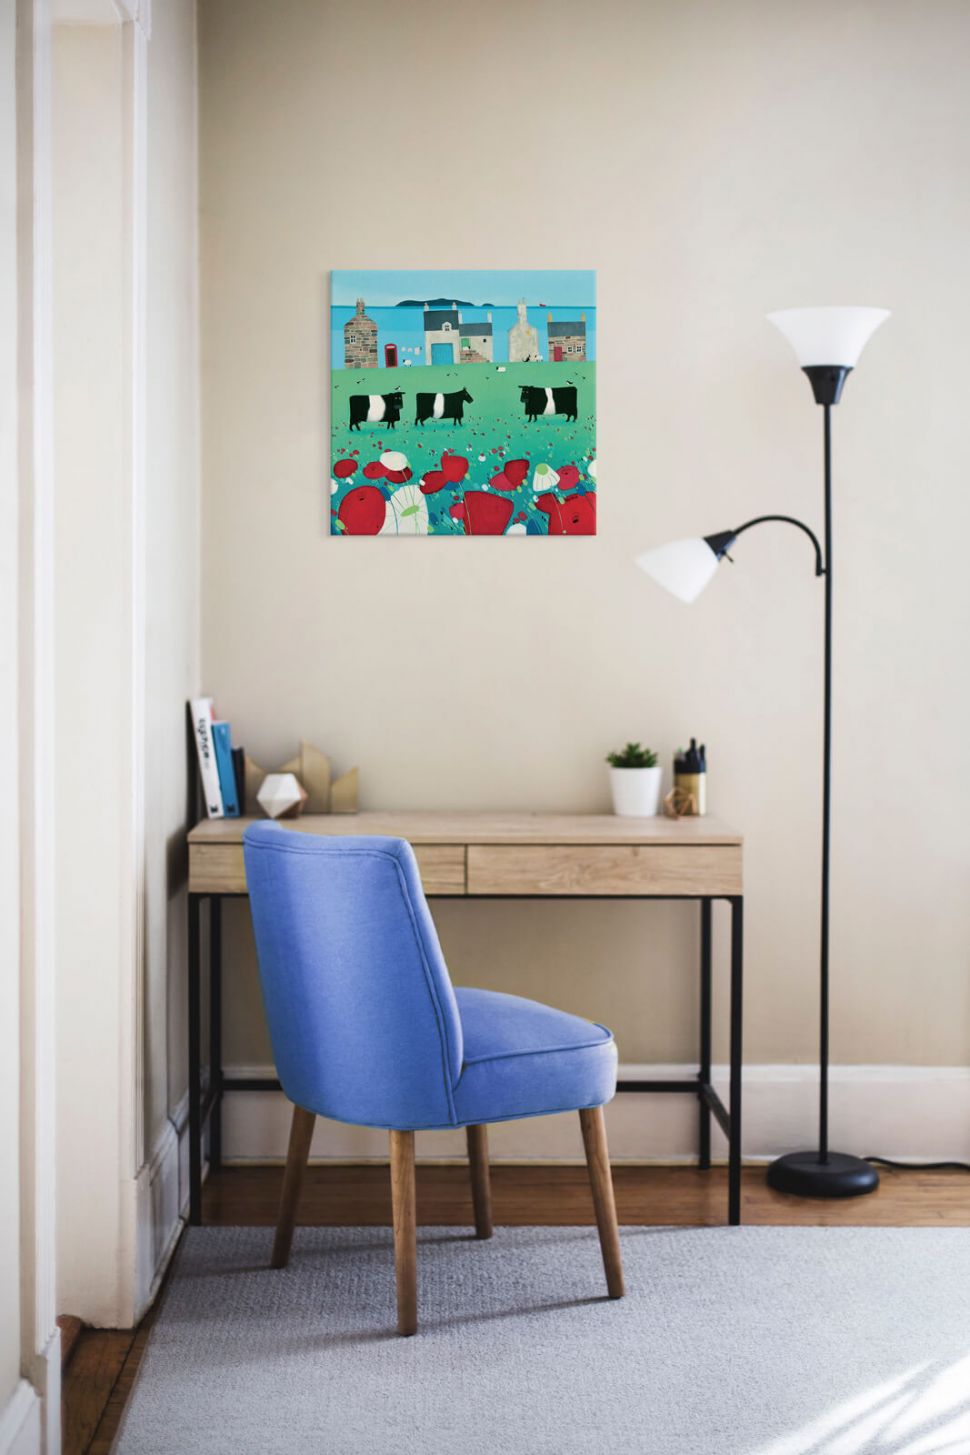 Obraz na płótnie The Clachan na ścianie w pokoju nad biurkiem i fioletowym krzesłem